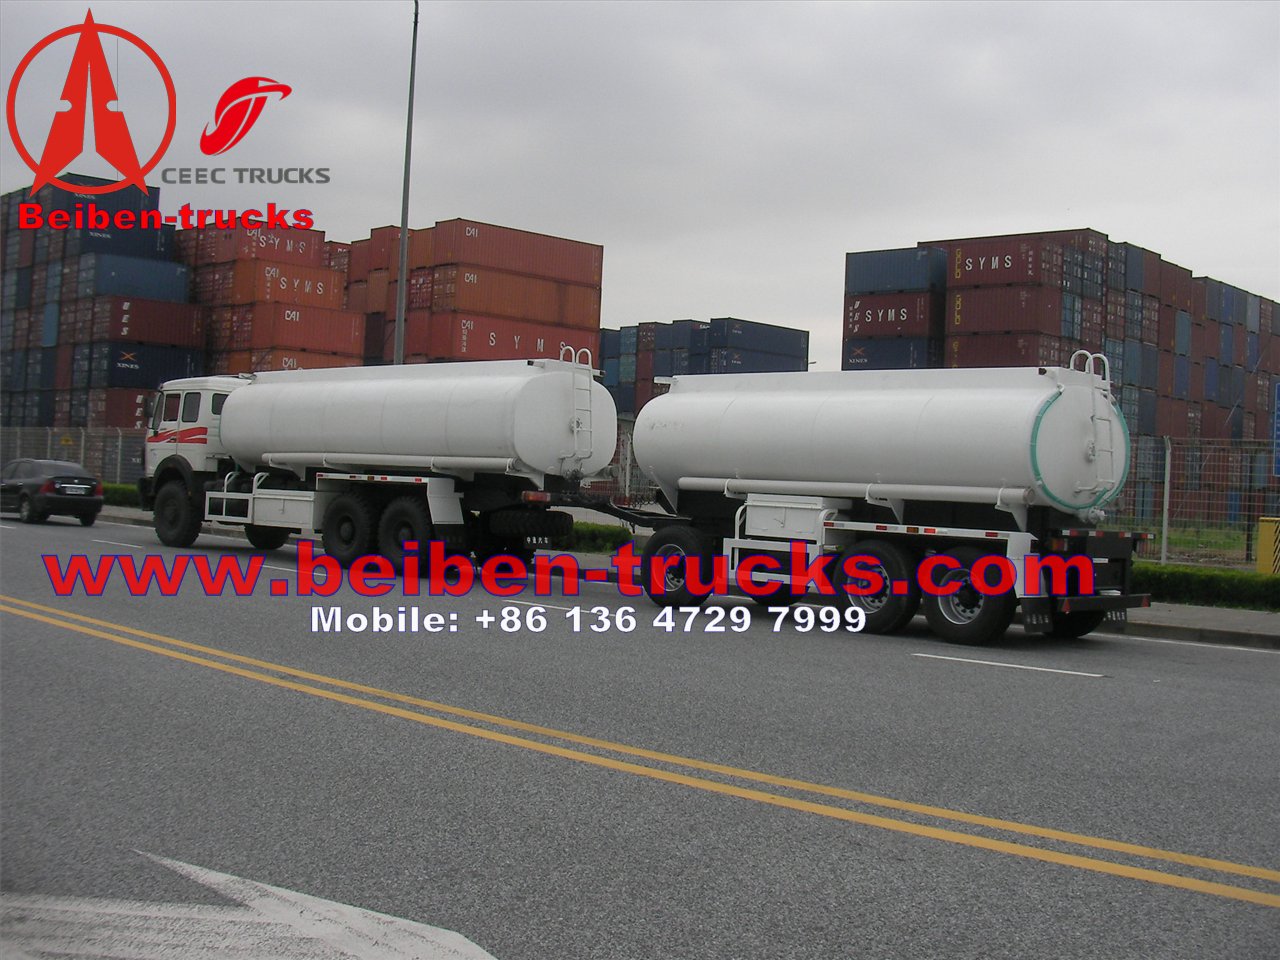 Fabricante de camiones cisterna de combustible con tracción total Beiben